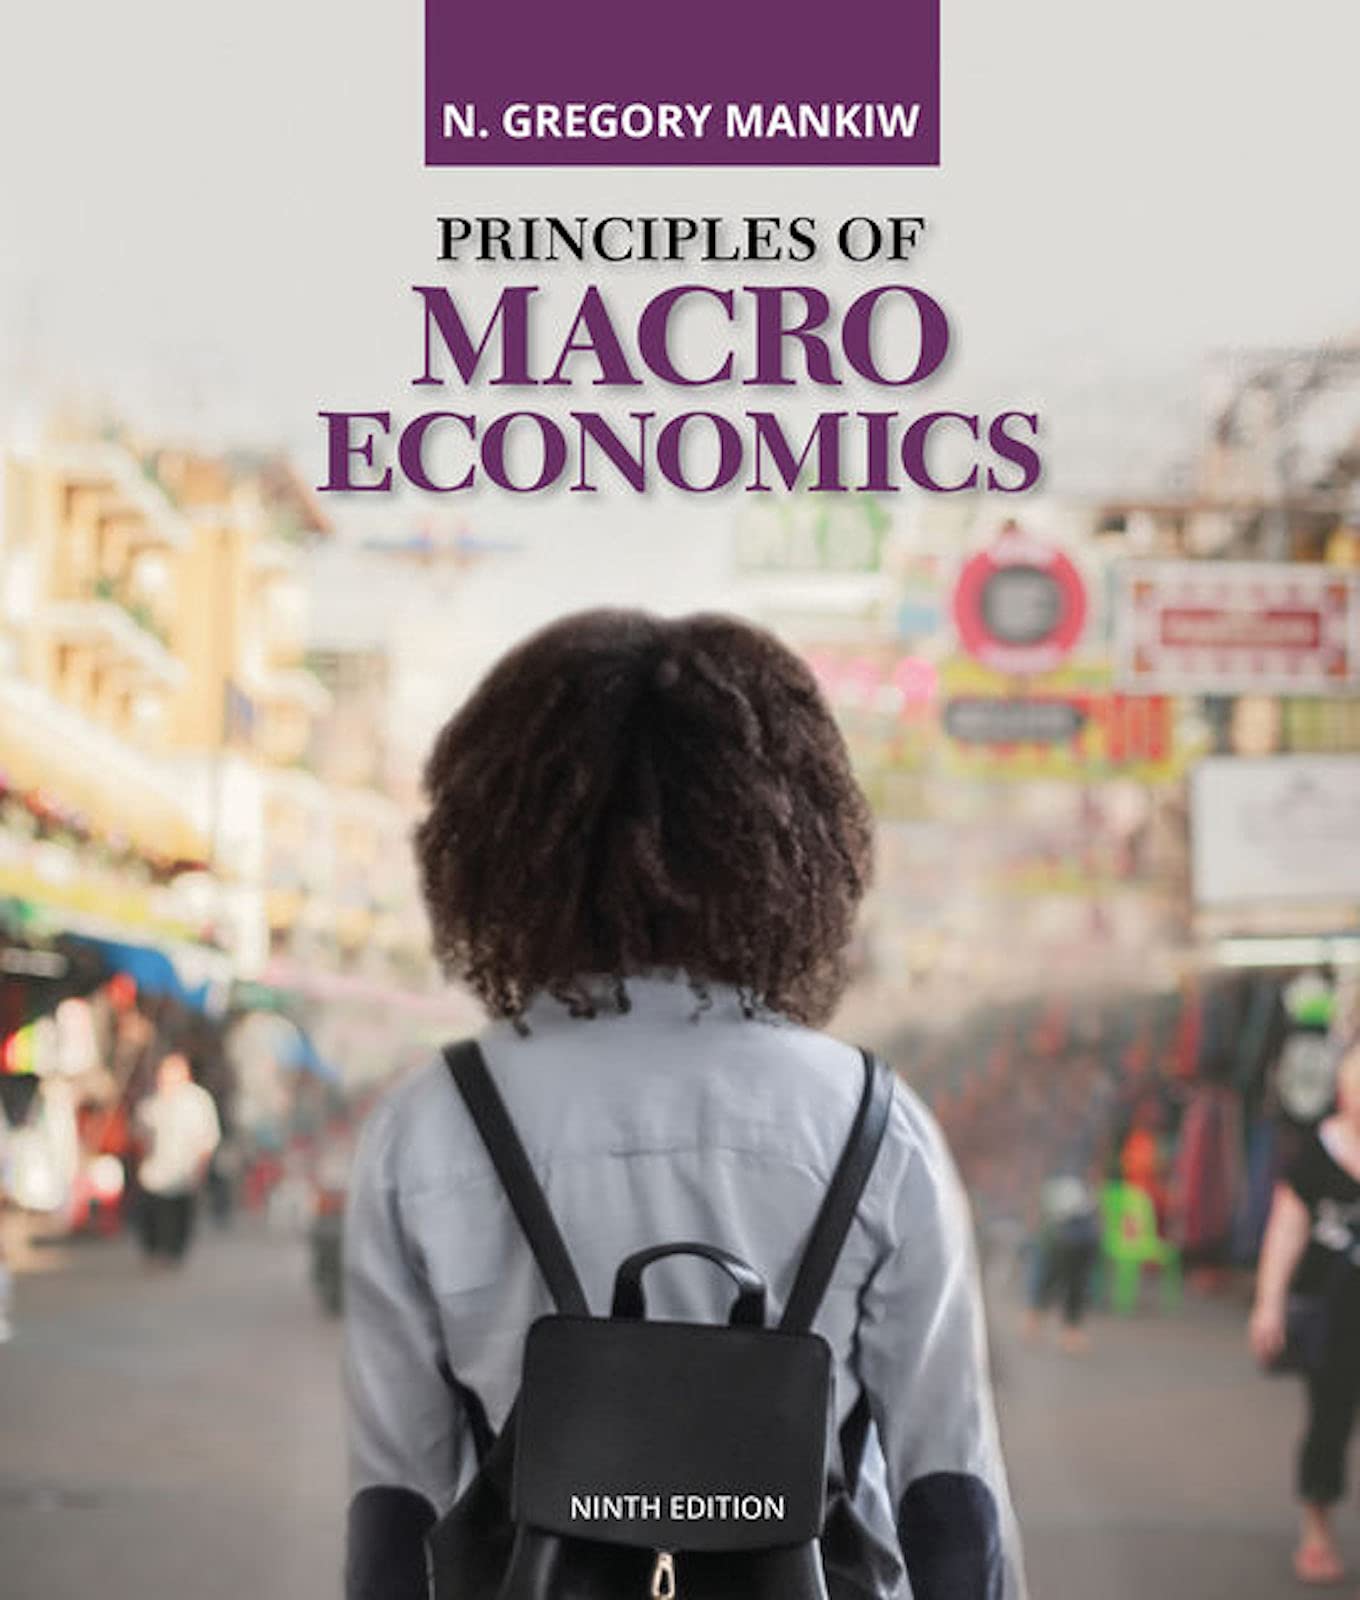 Principles of Macroeconomics (MindTap Course List)